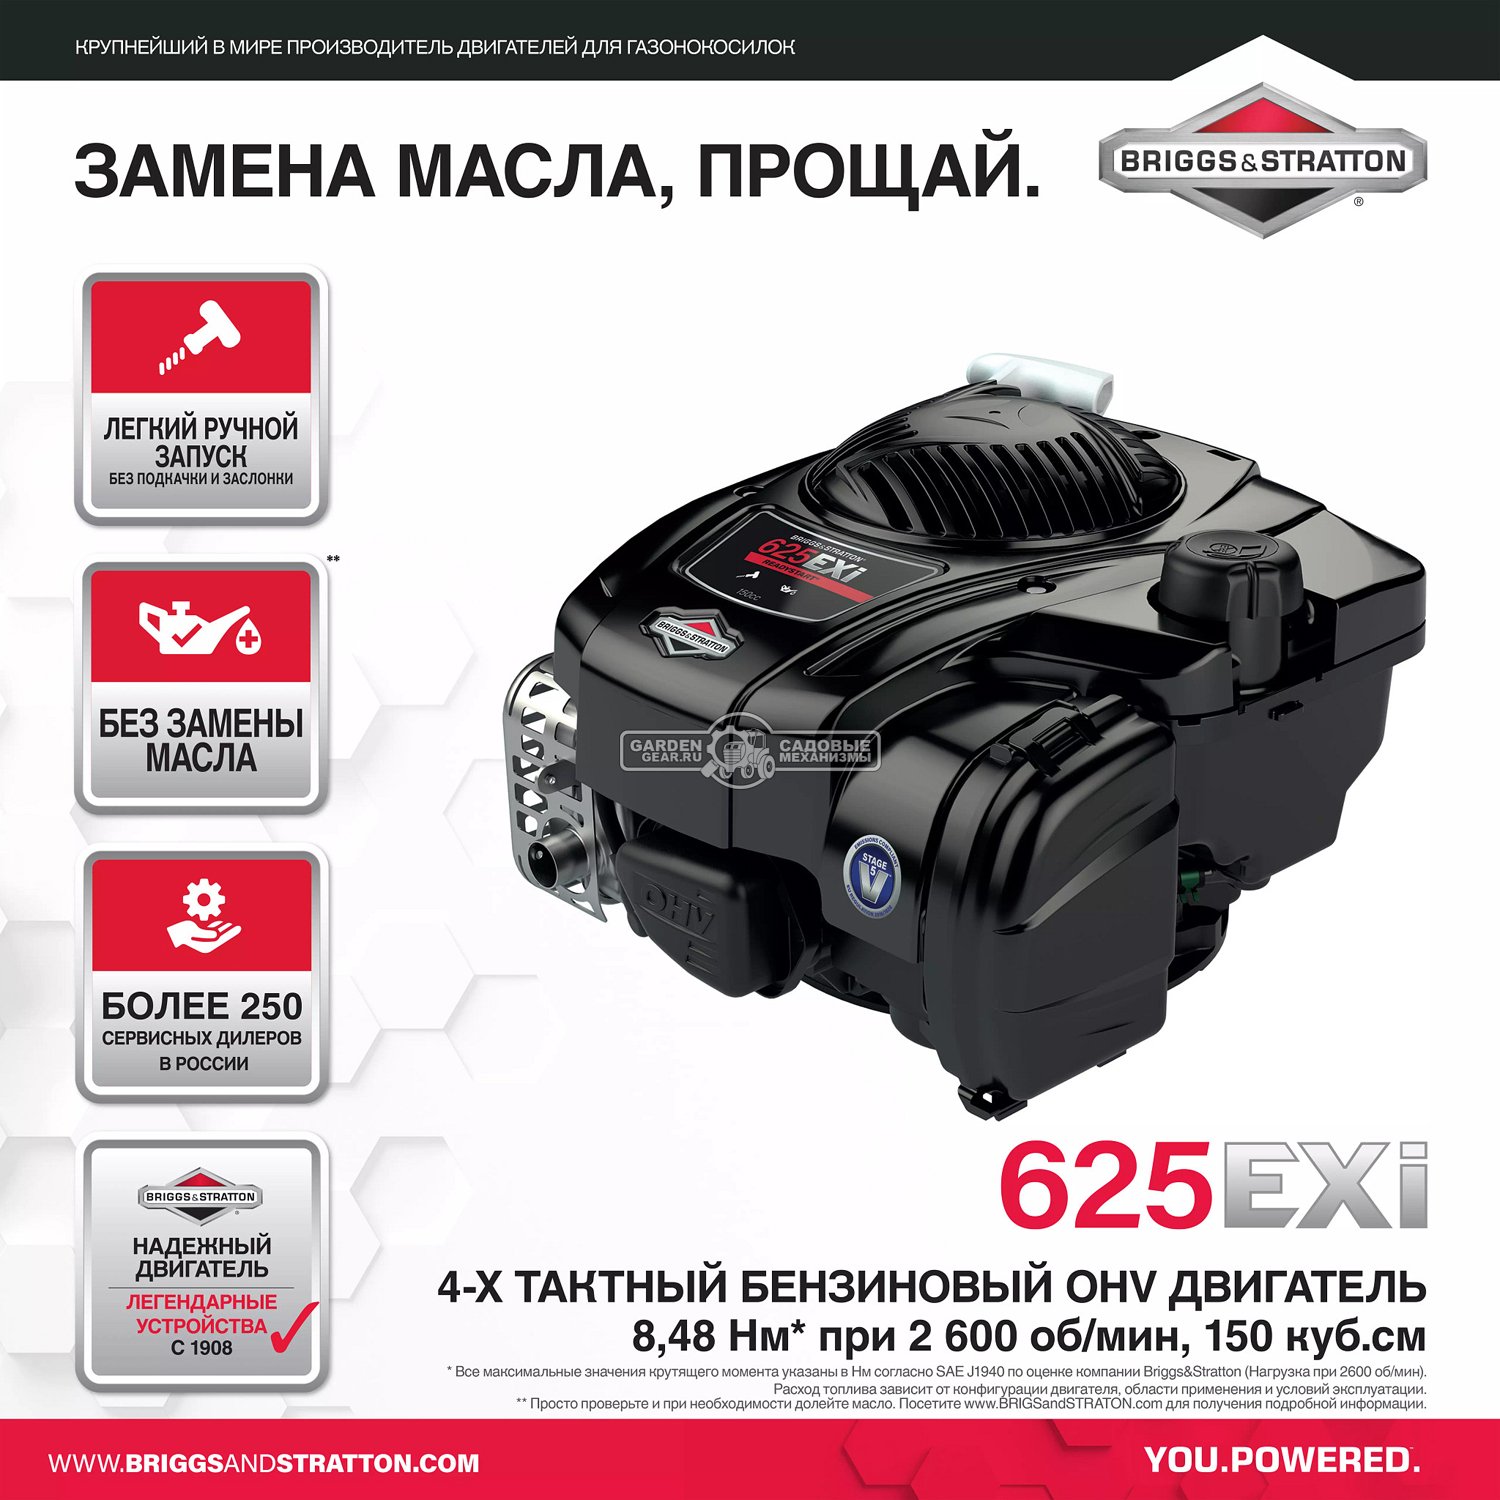 Сенокосилка Eurosystems Minieffe 502 RM B&S 625EXi (ITA, 87 см, 150 см3, 1 вперед/1 назад, 45 кг)